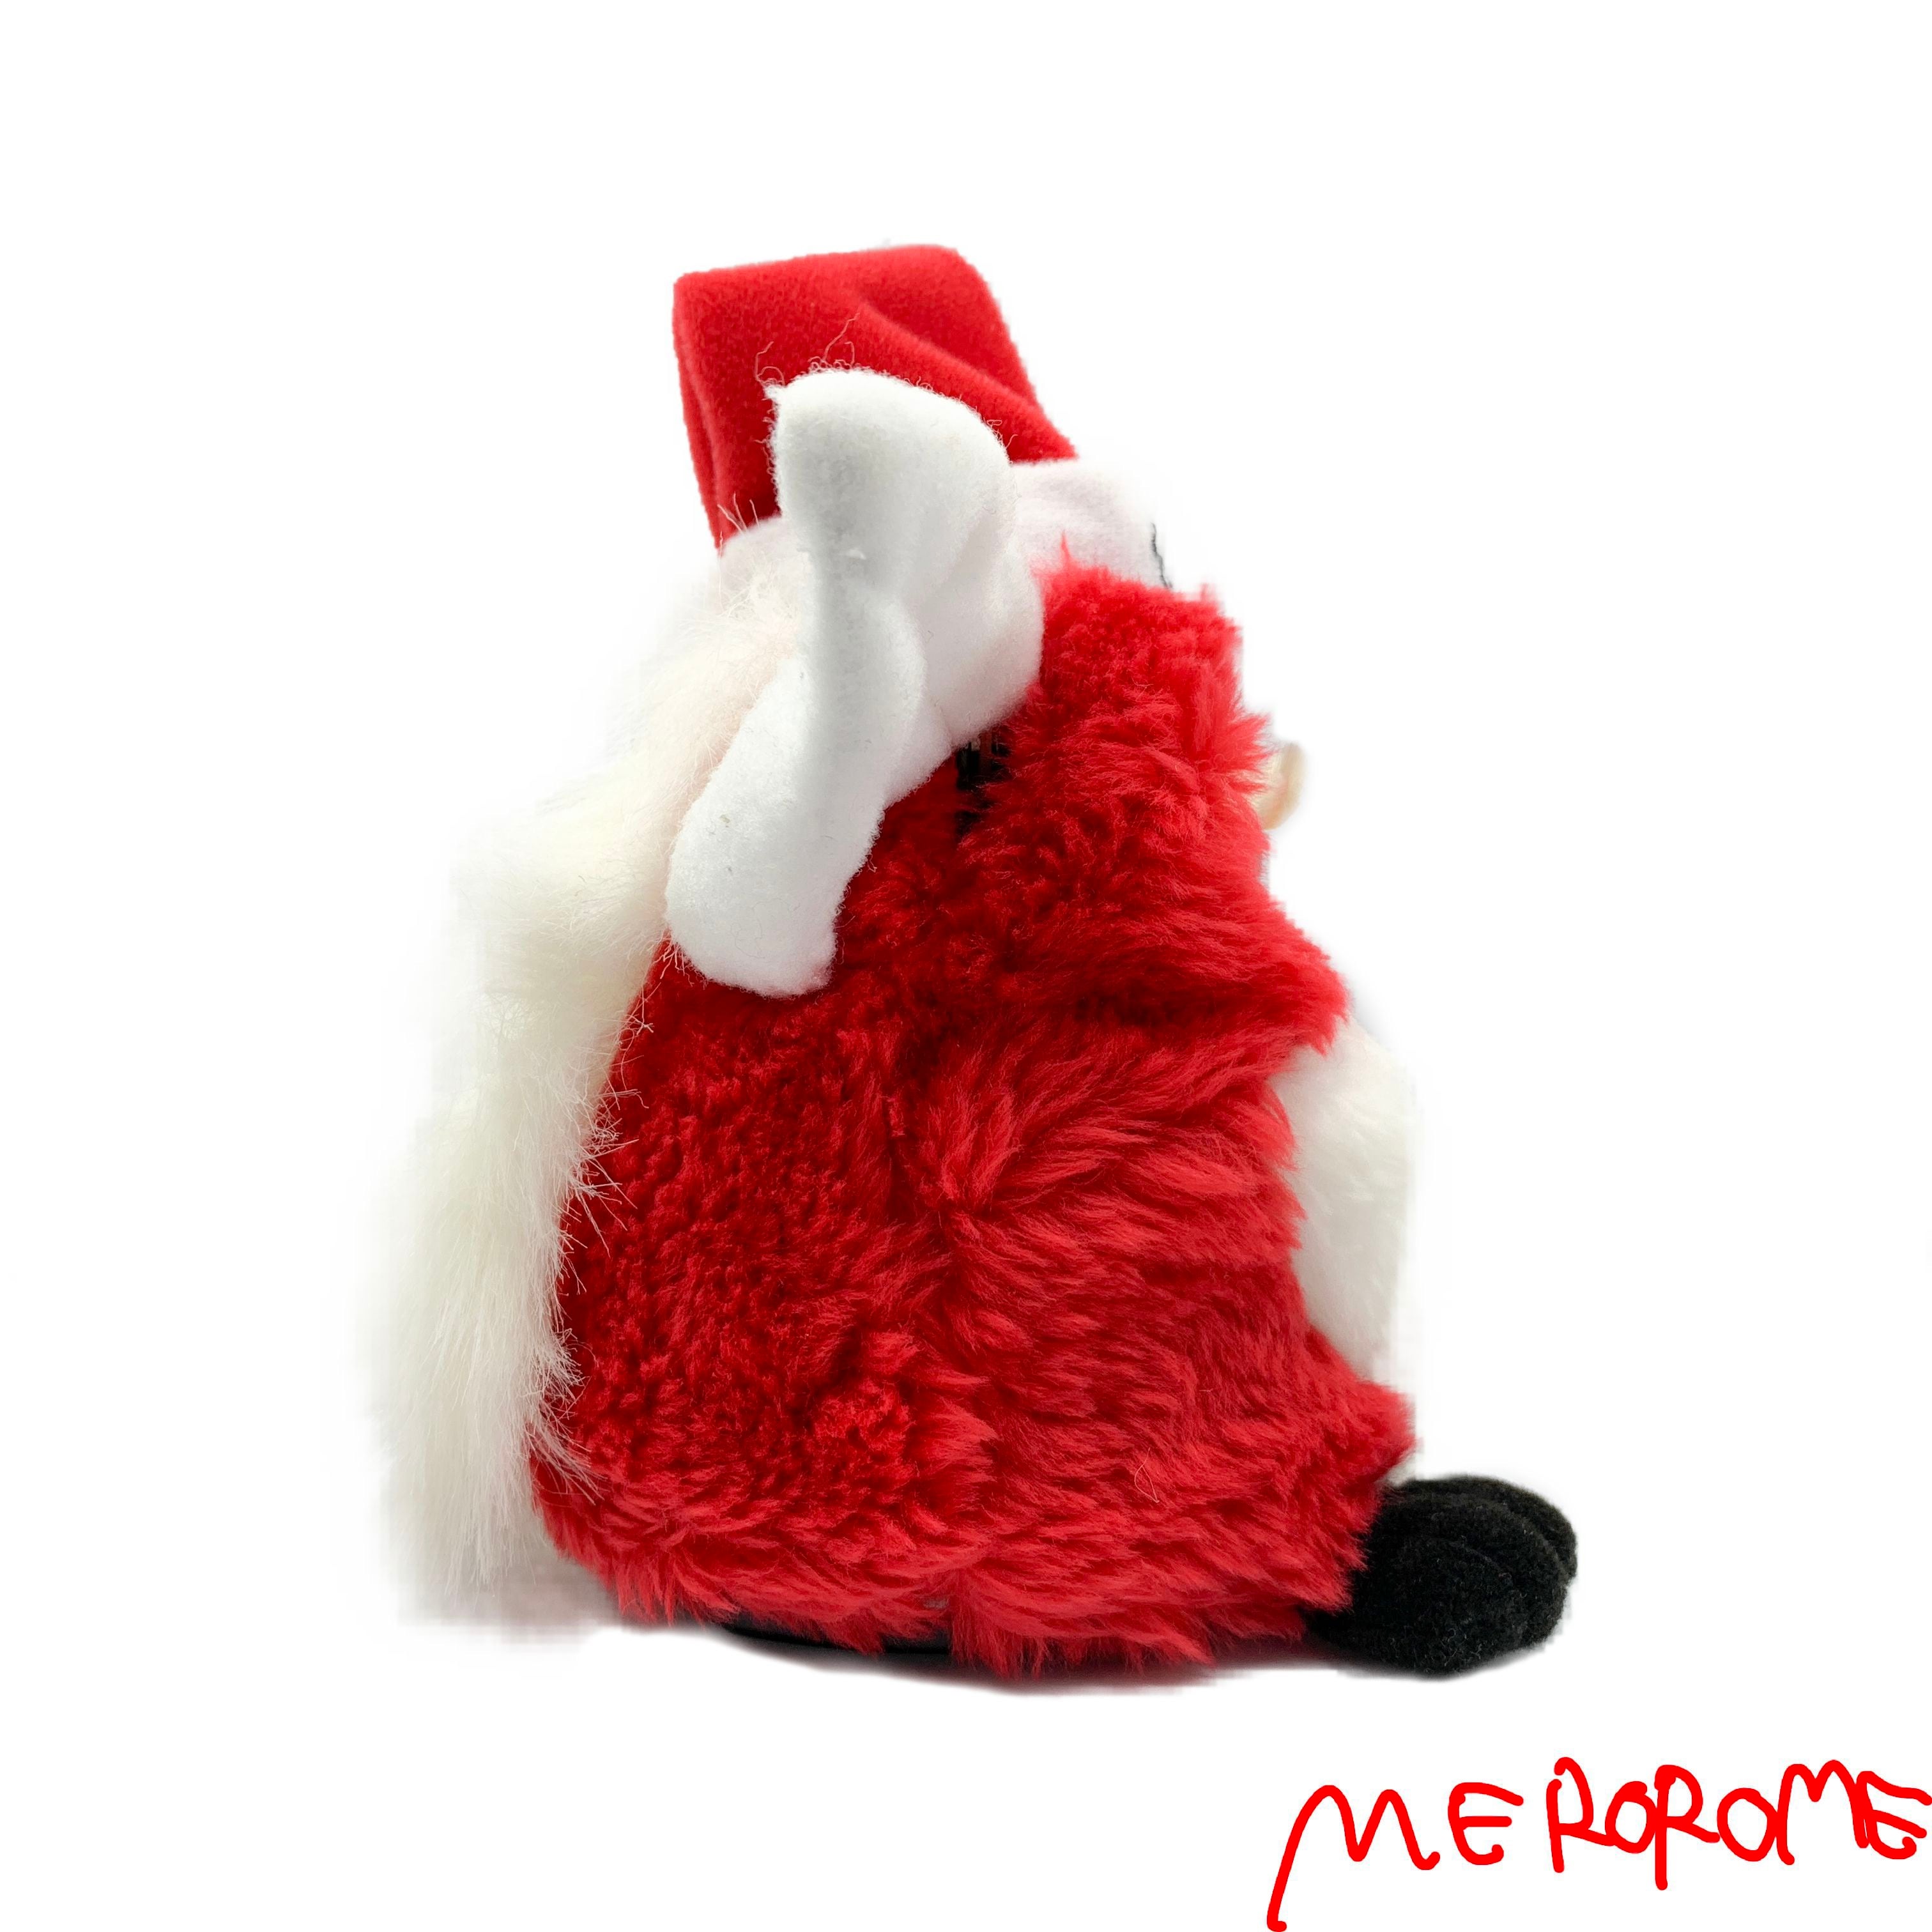 ファービー クリスマス 限定バージョン Furby Christmas Limited Edition